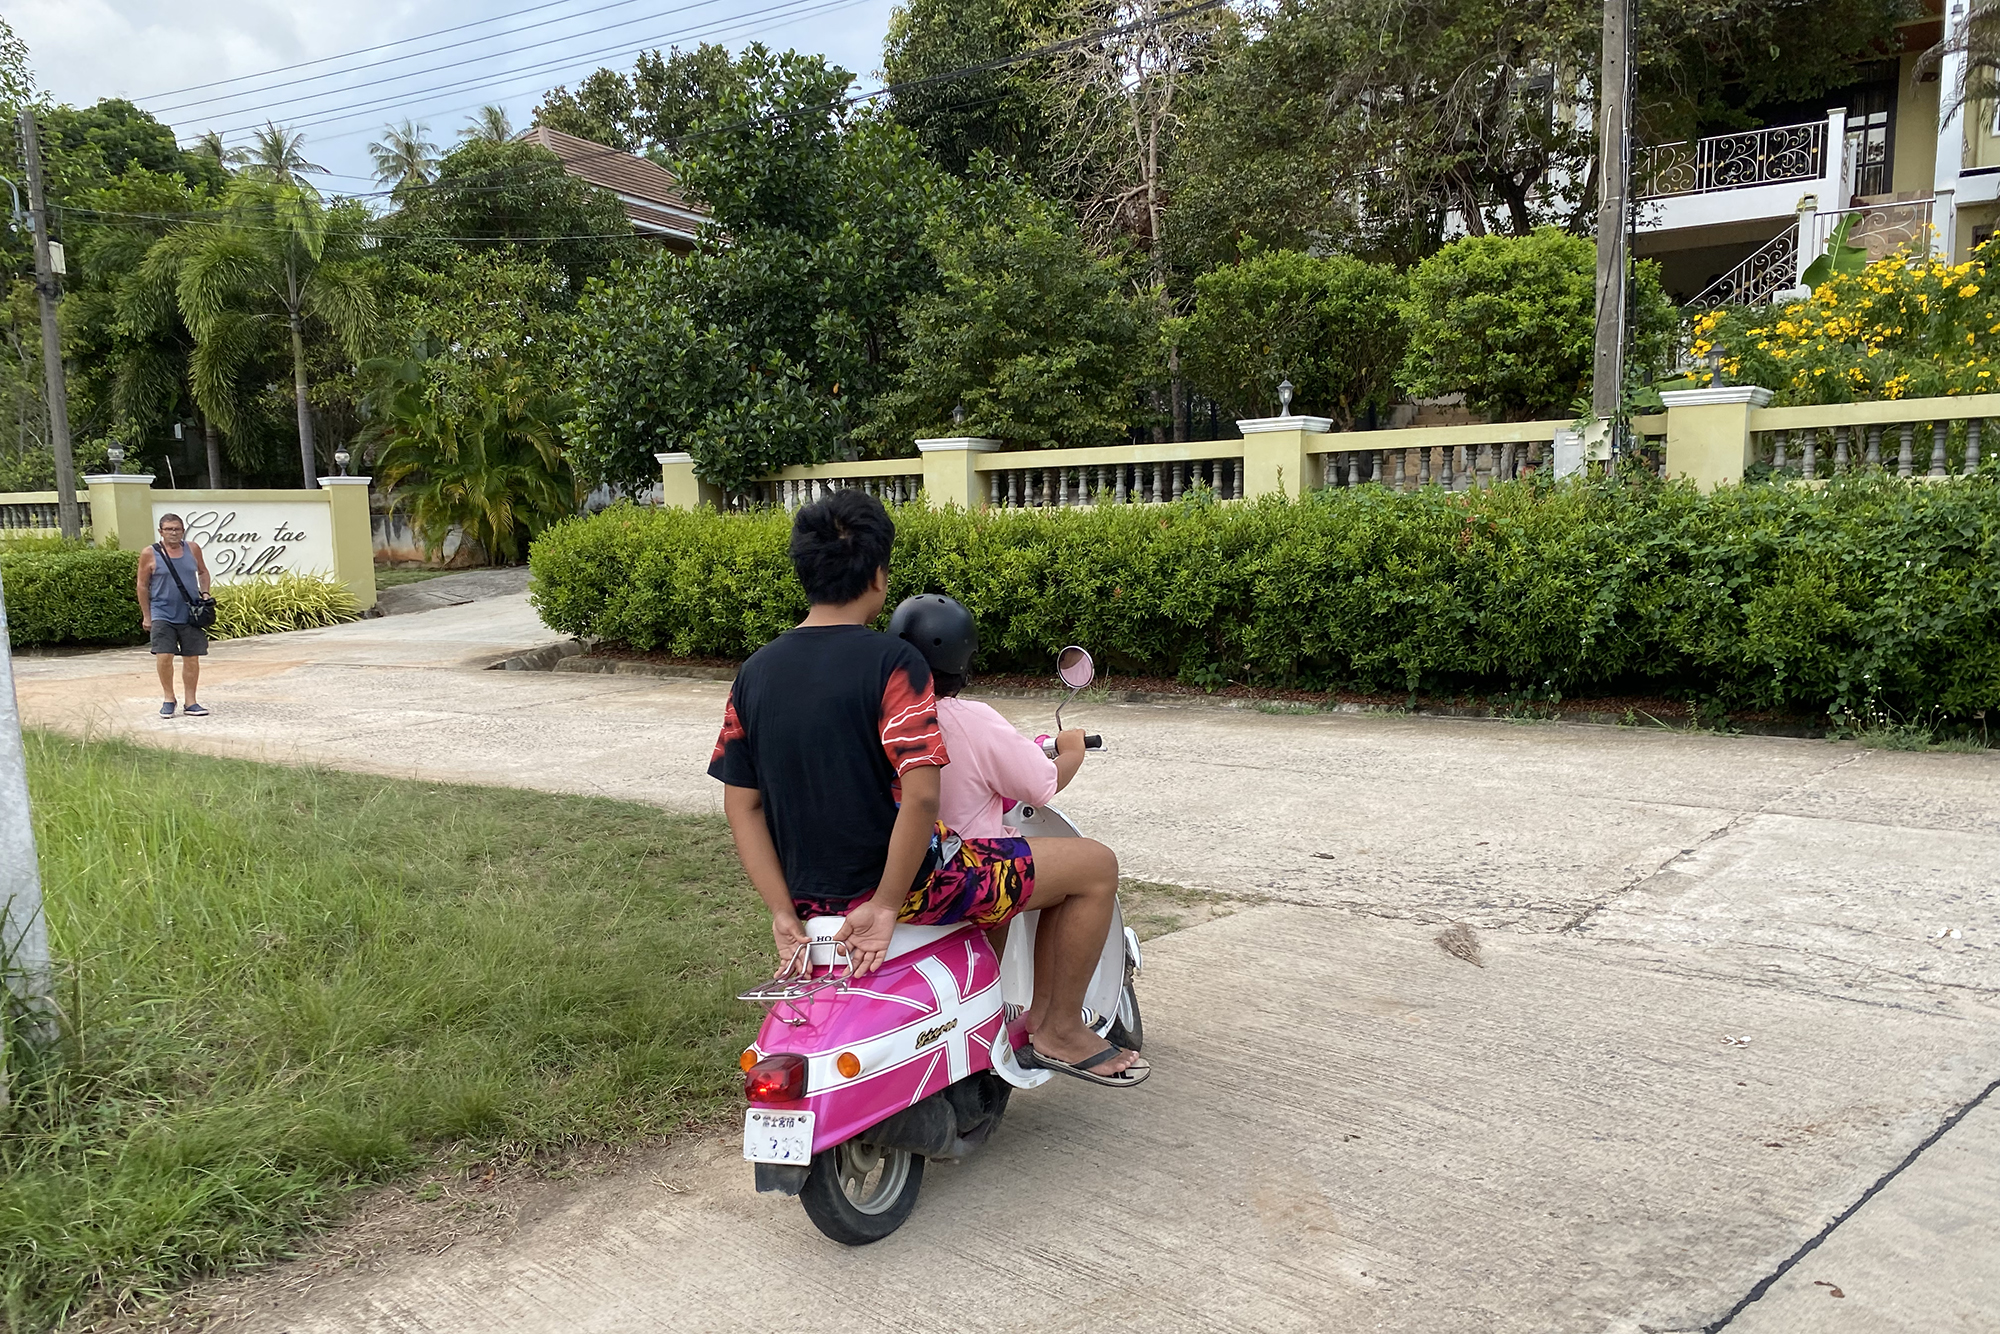 Байк — основное средство передвижения на острове. Тайцы учатся водить с детства